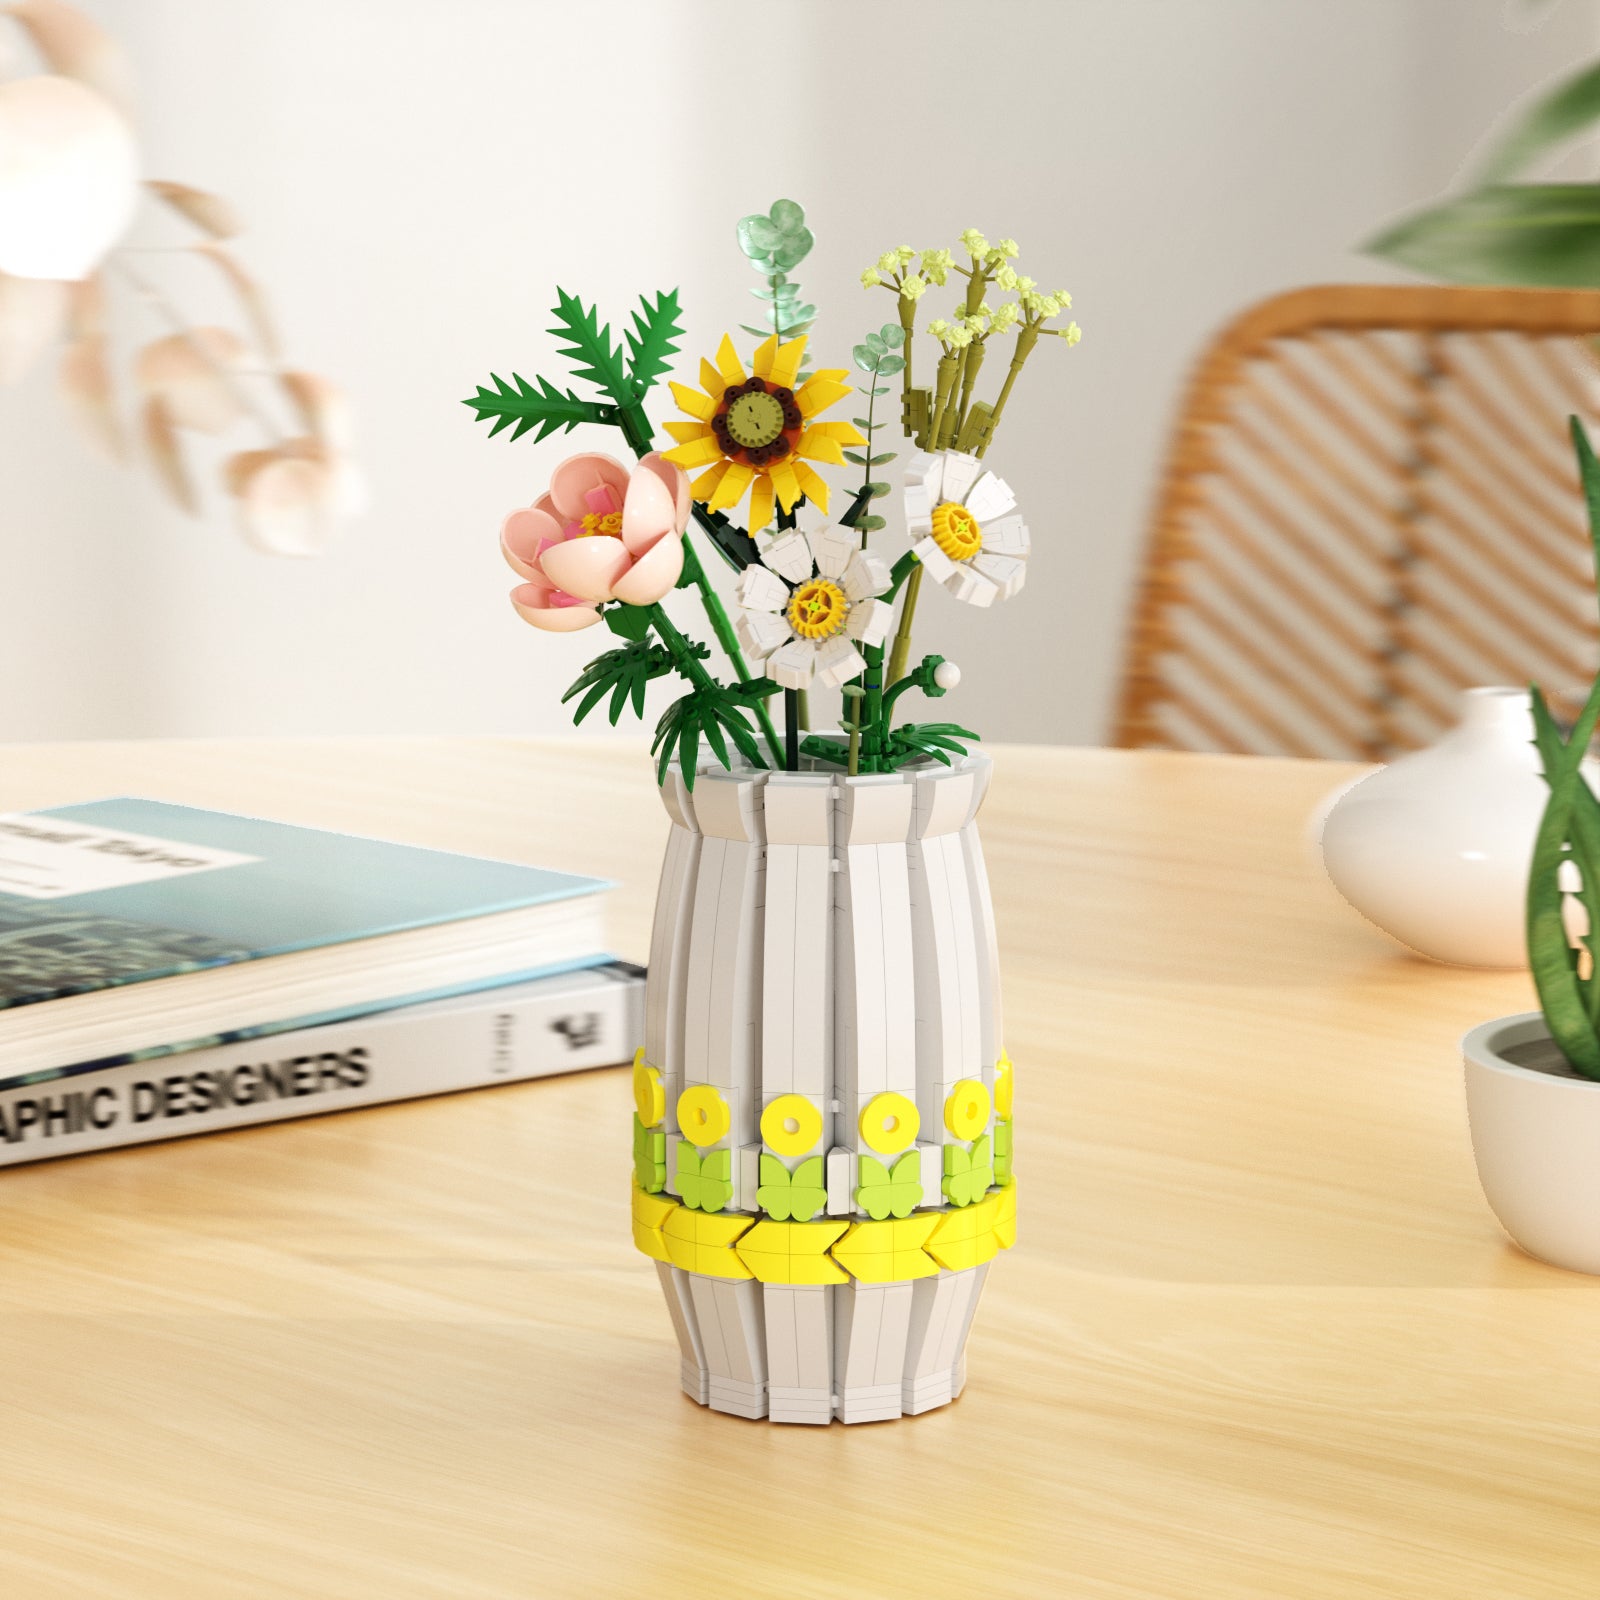 460 Pcs Vase for Lego Flower Bouquet 10280 Vase Home Decoration